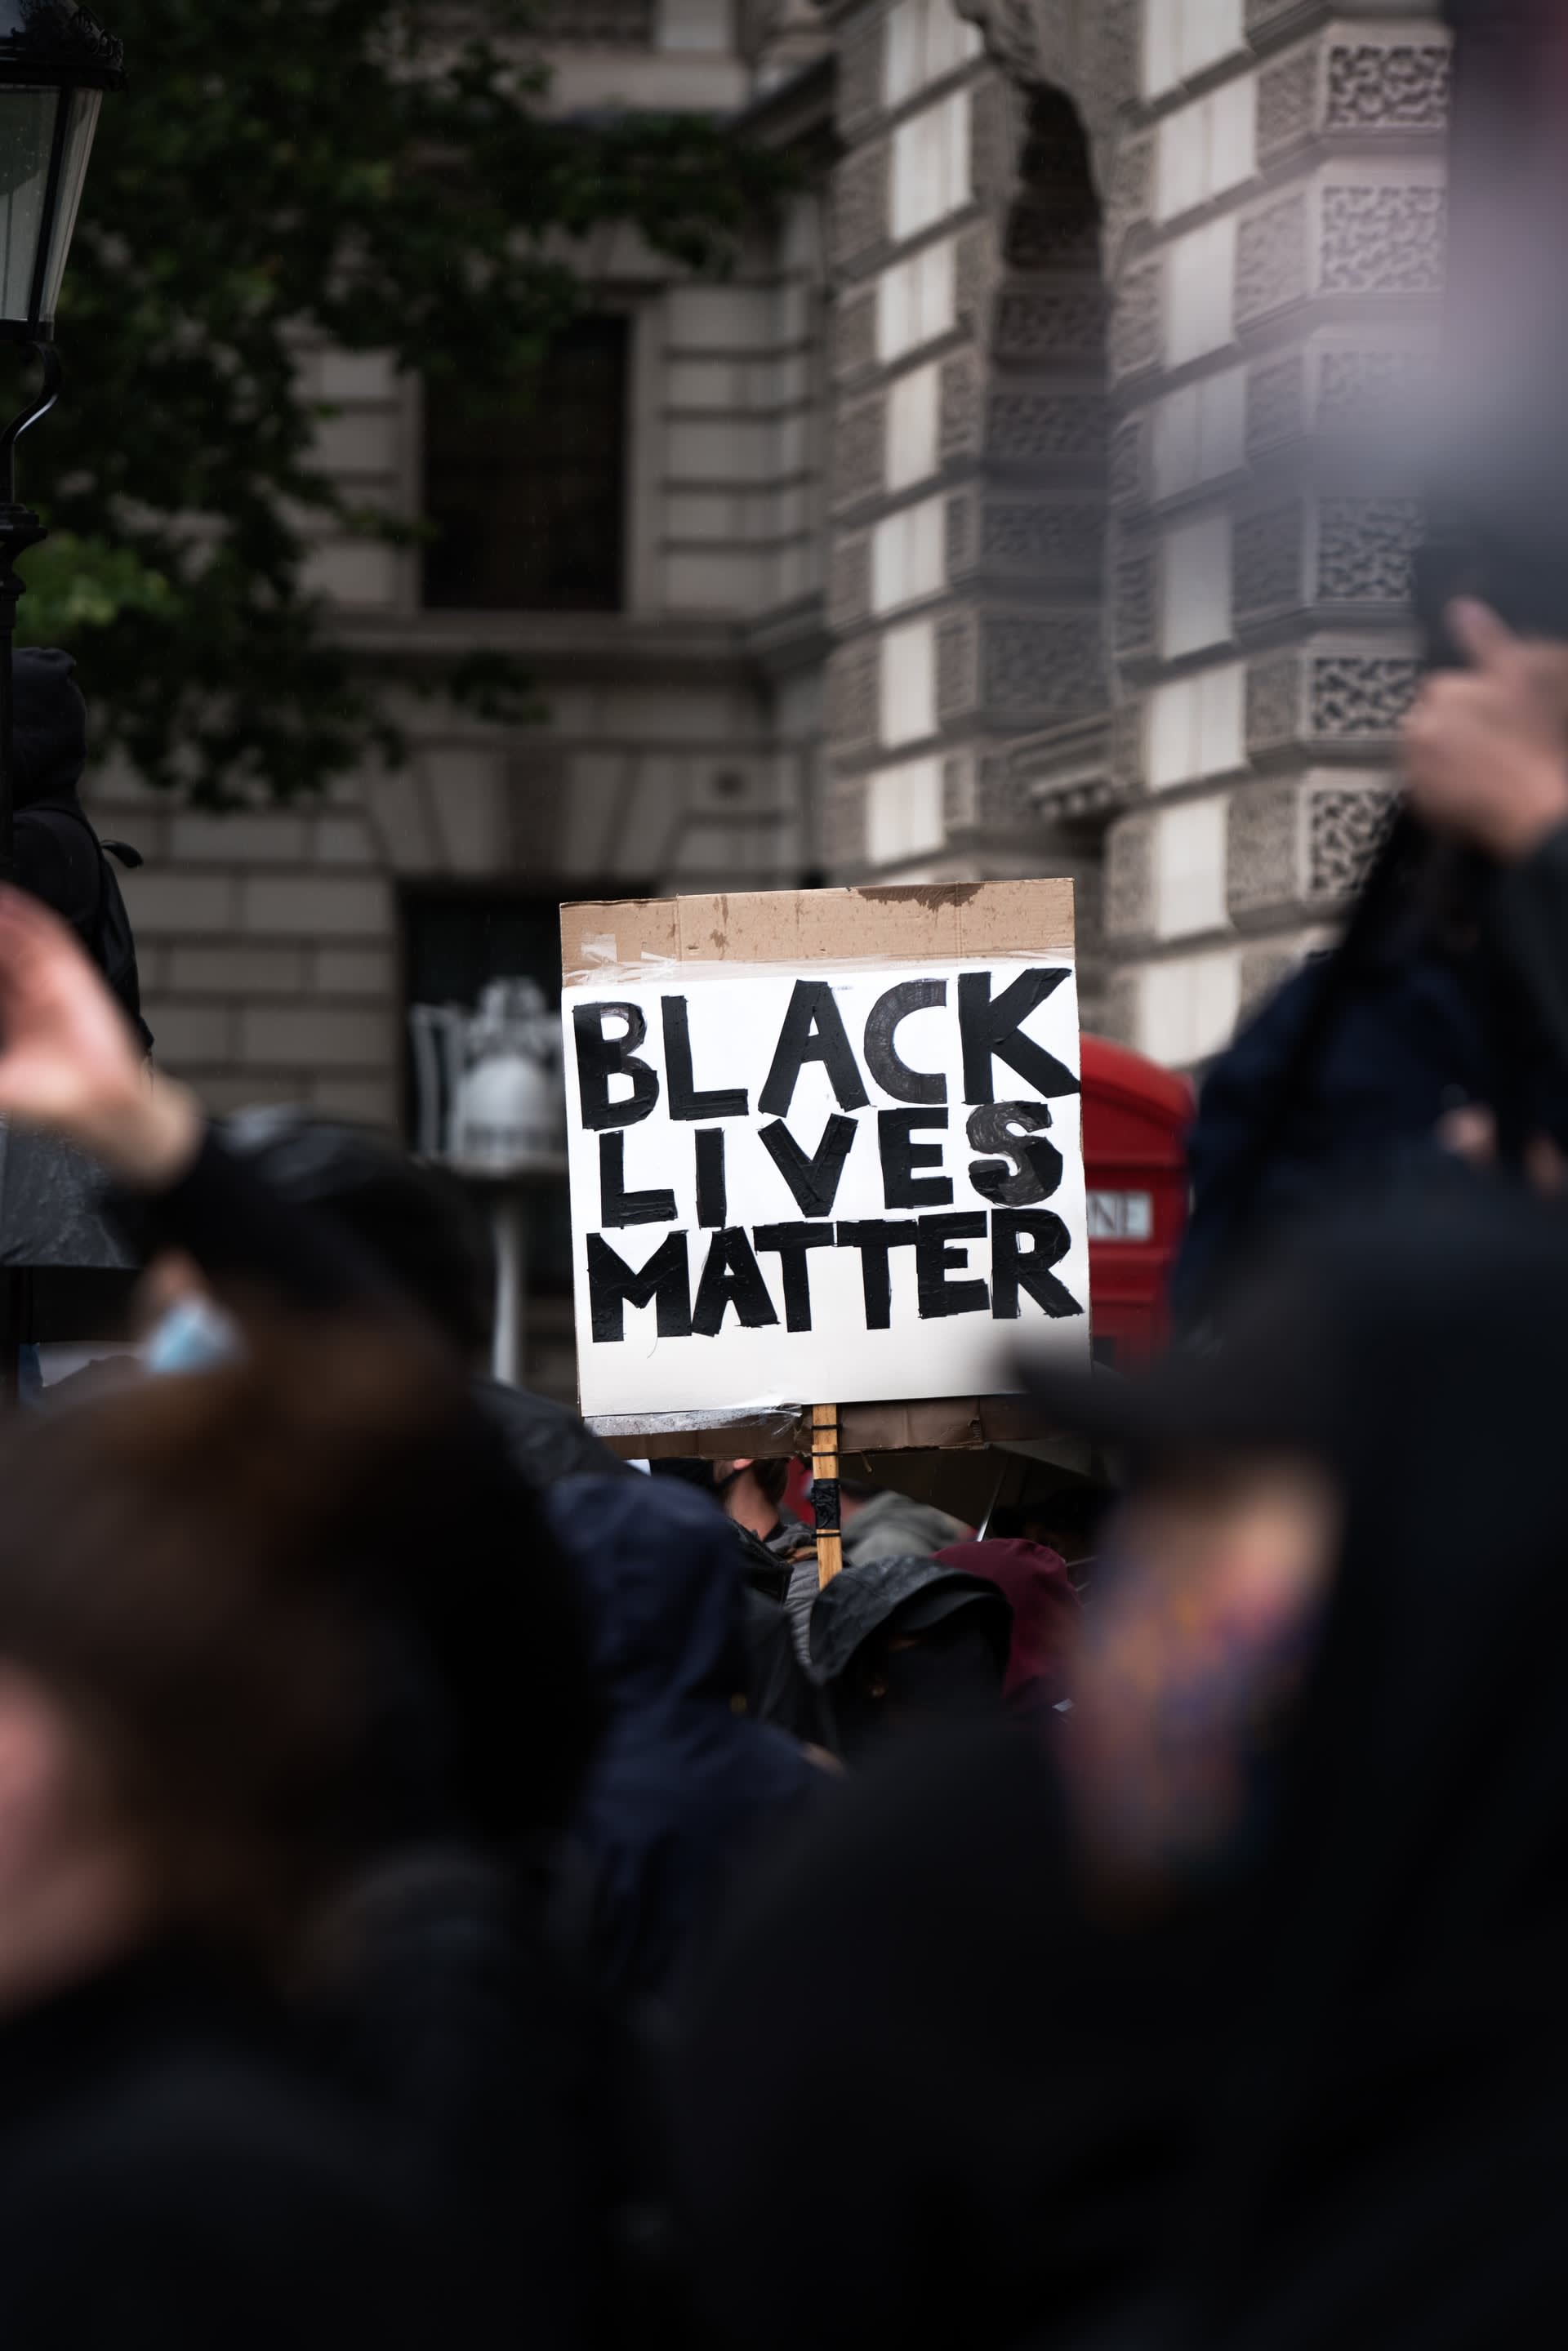 Being Introspective on #BlackLivesMatter: Building a Better World